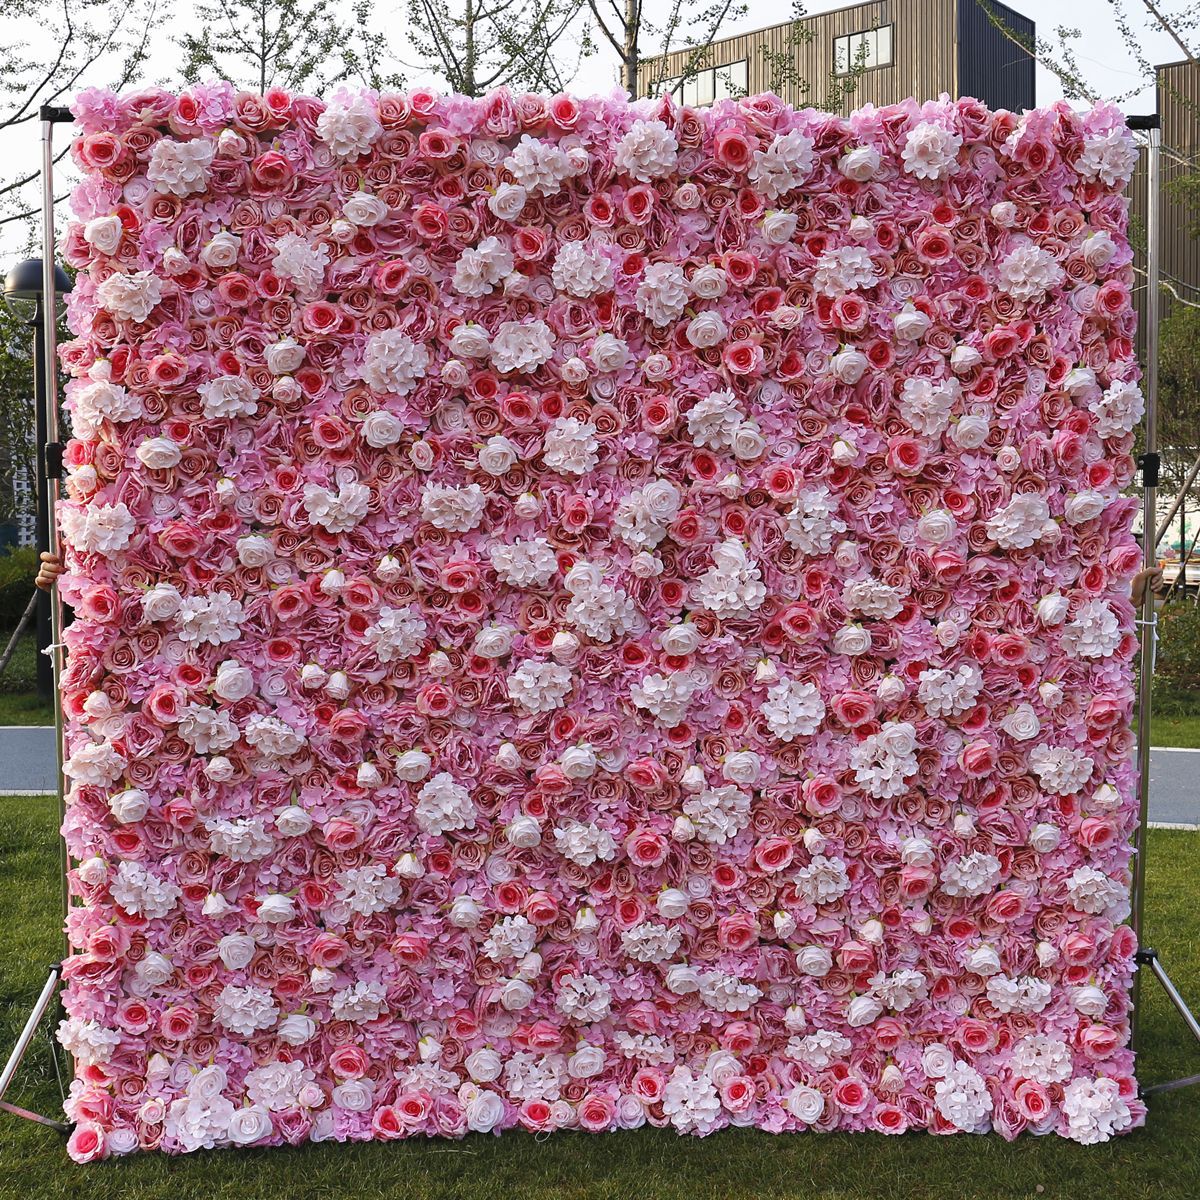  Hochzeit Stoffboden Simulation Blumenwand Hintergrund Wand Film Studio Hintergrund Seidenblumenreihe Pflanzenwand Blumenwand 